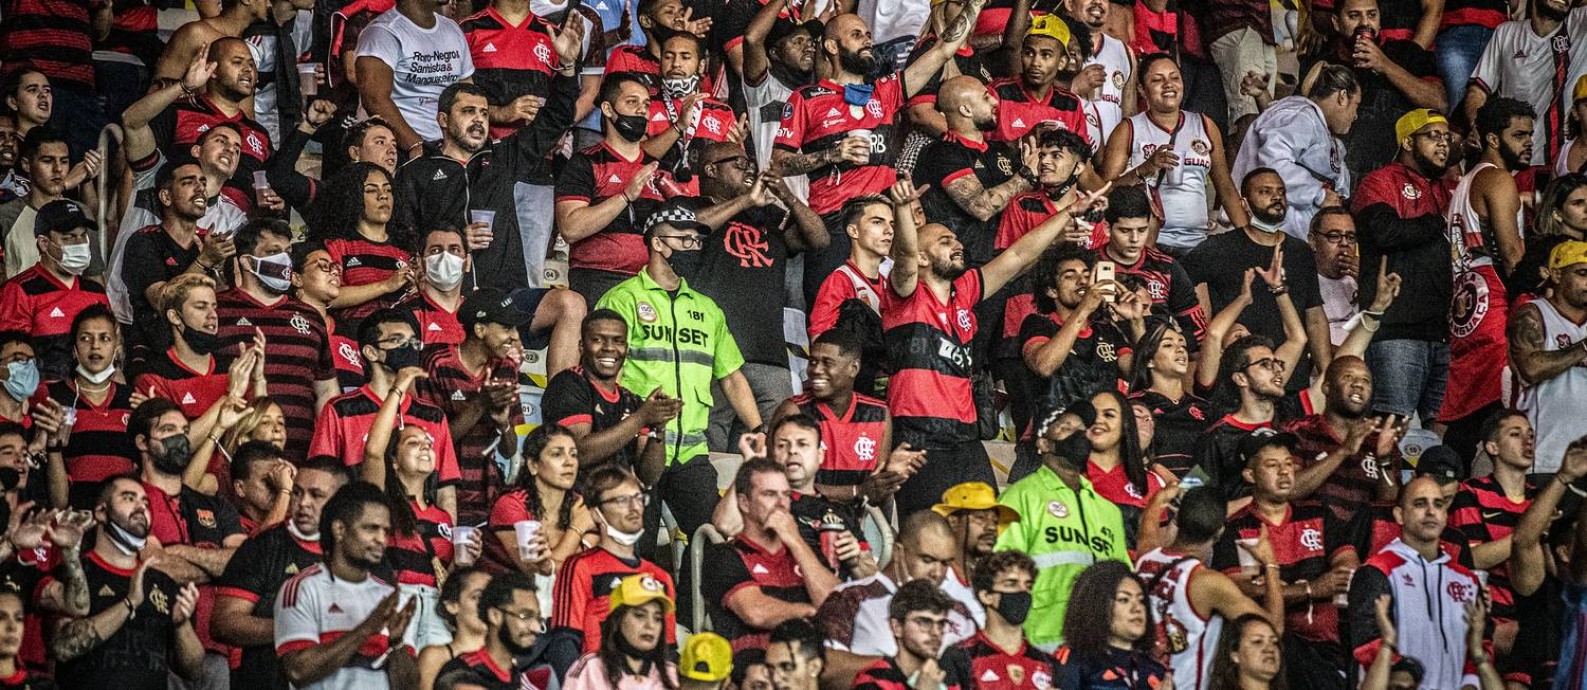 Torcida do Flamengo precisa de dinheiro para acompanhar jogos do time Foto: Foto: Alexandre Vidal / Flamengo / Agência O Globo